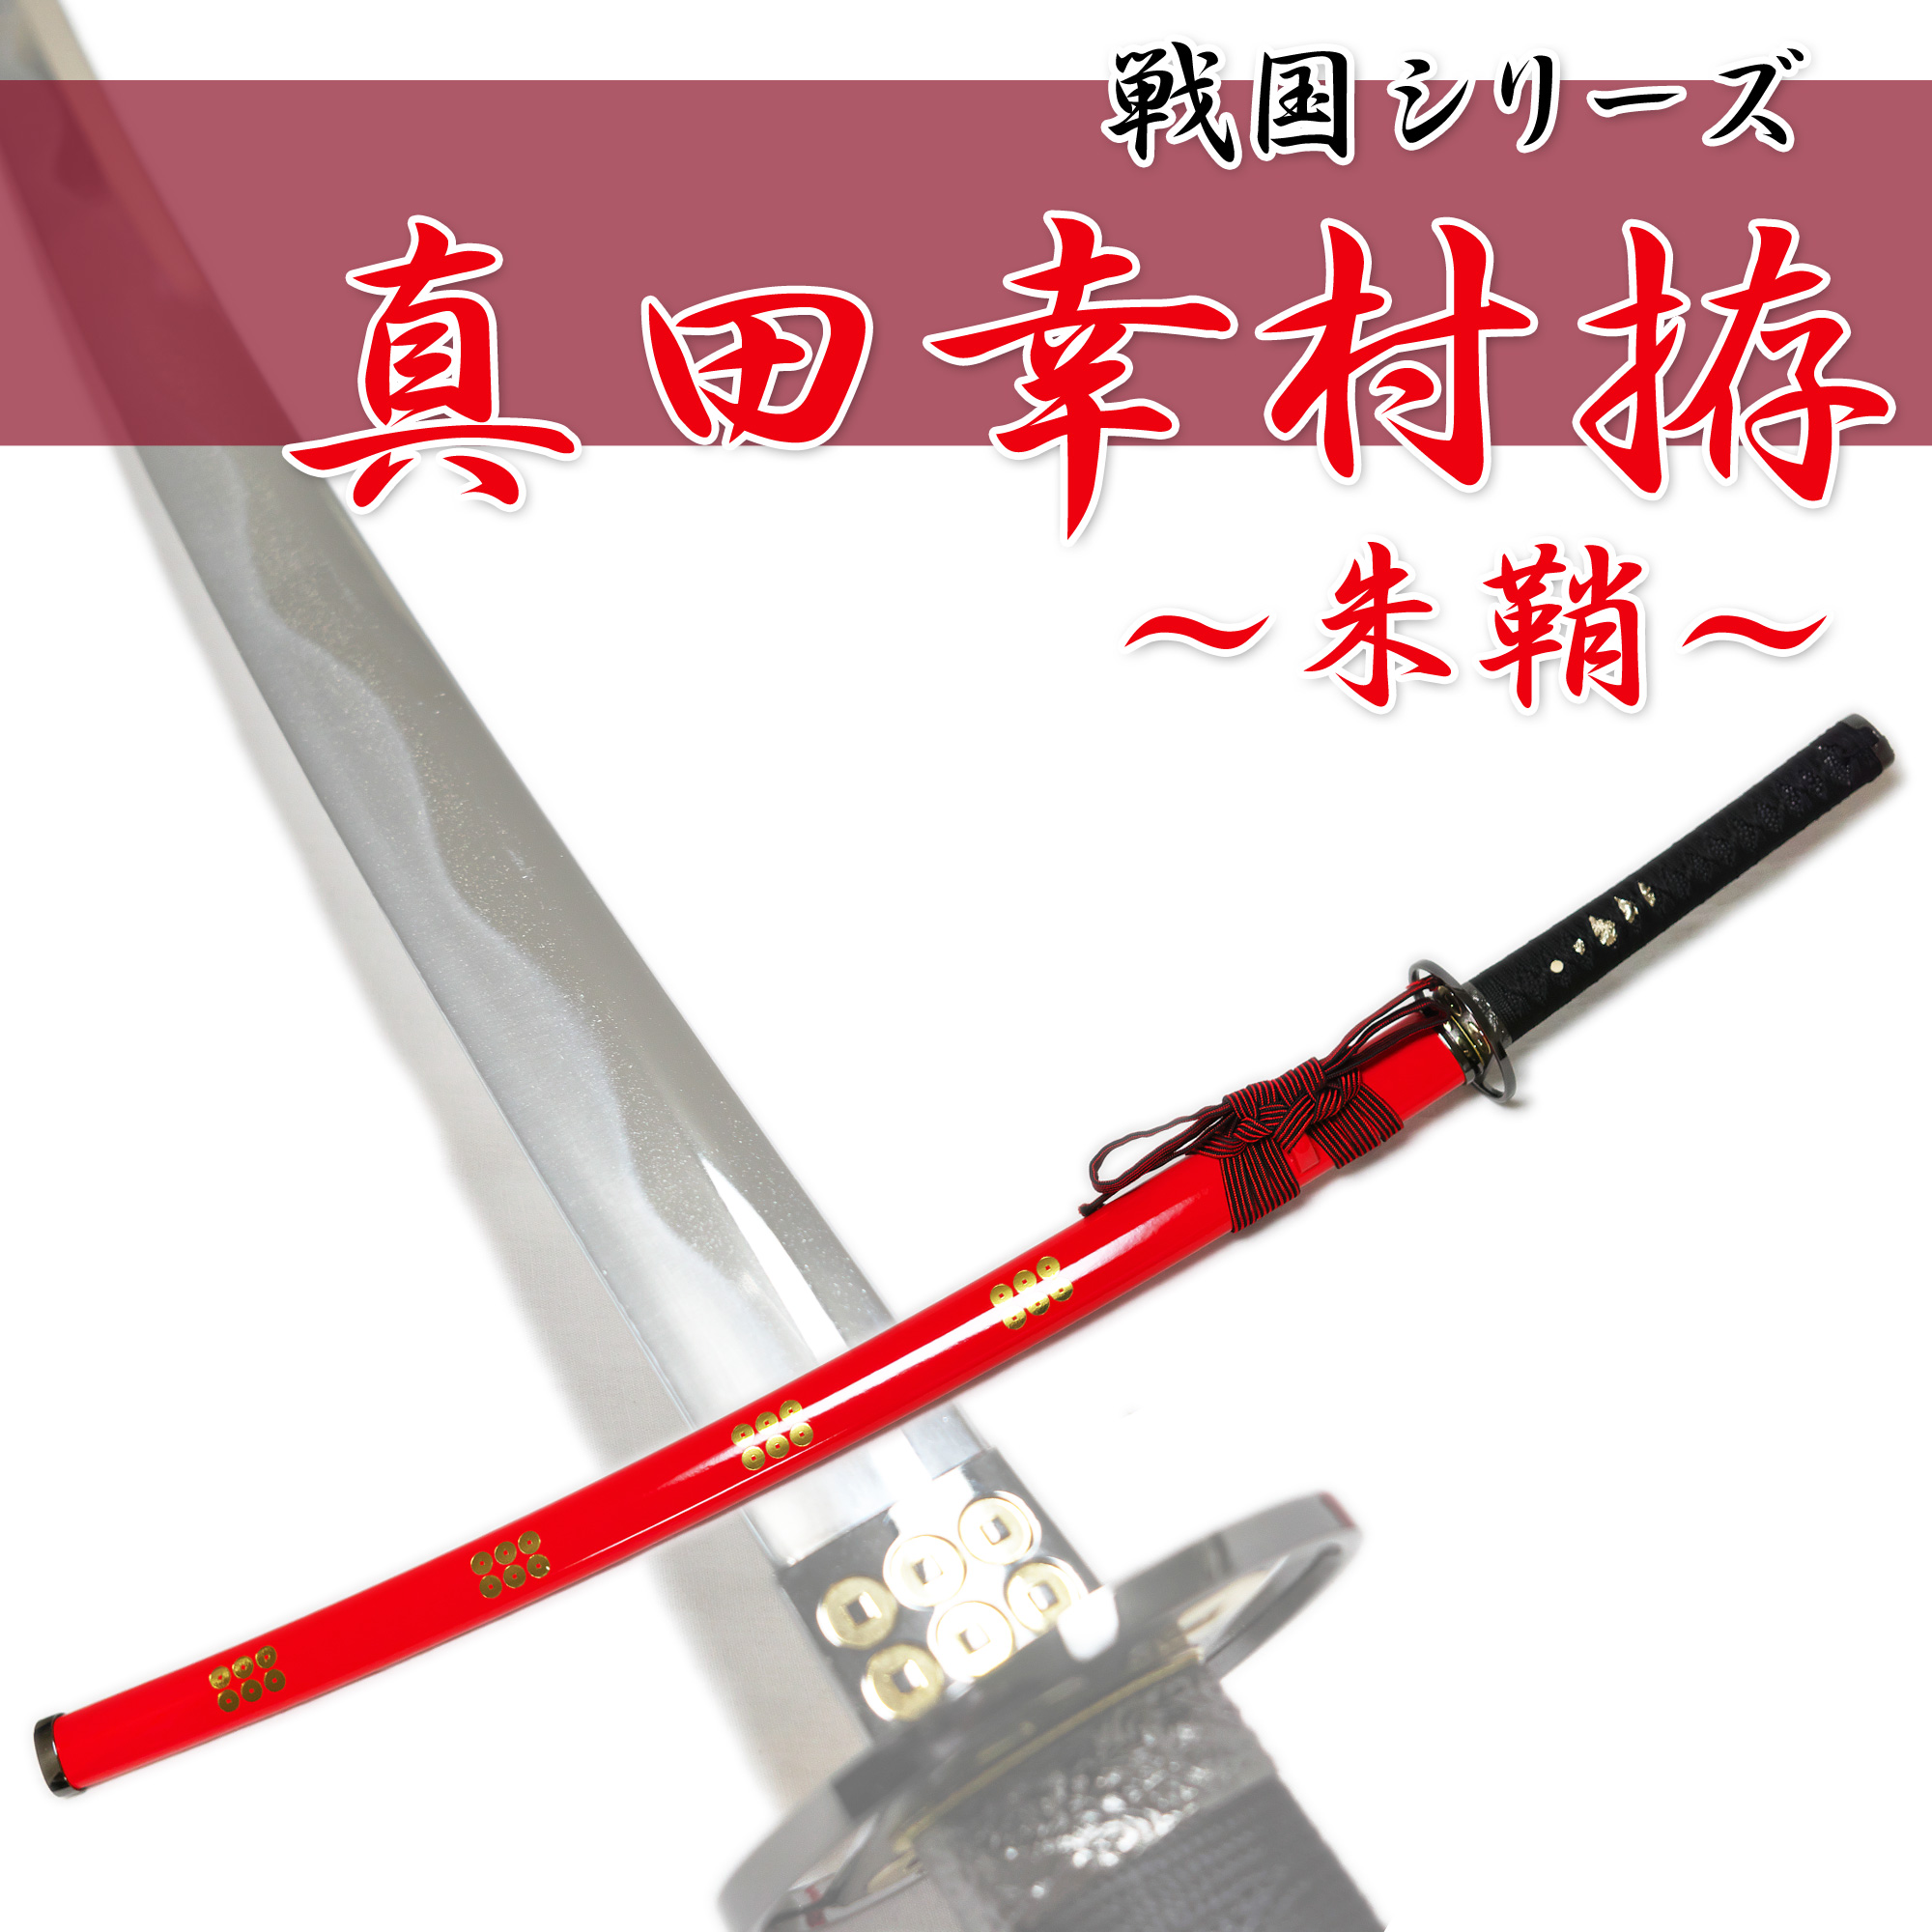 模造刀剣 真田幸村 朱鞘 NEU-018RD - 戦国シリーズ 模造刀